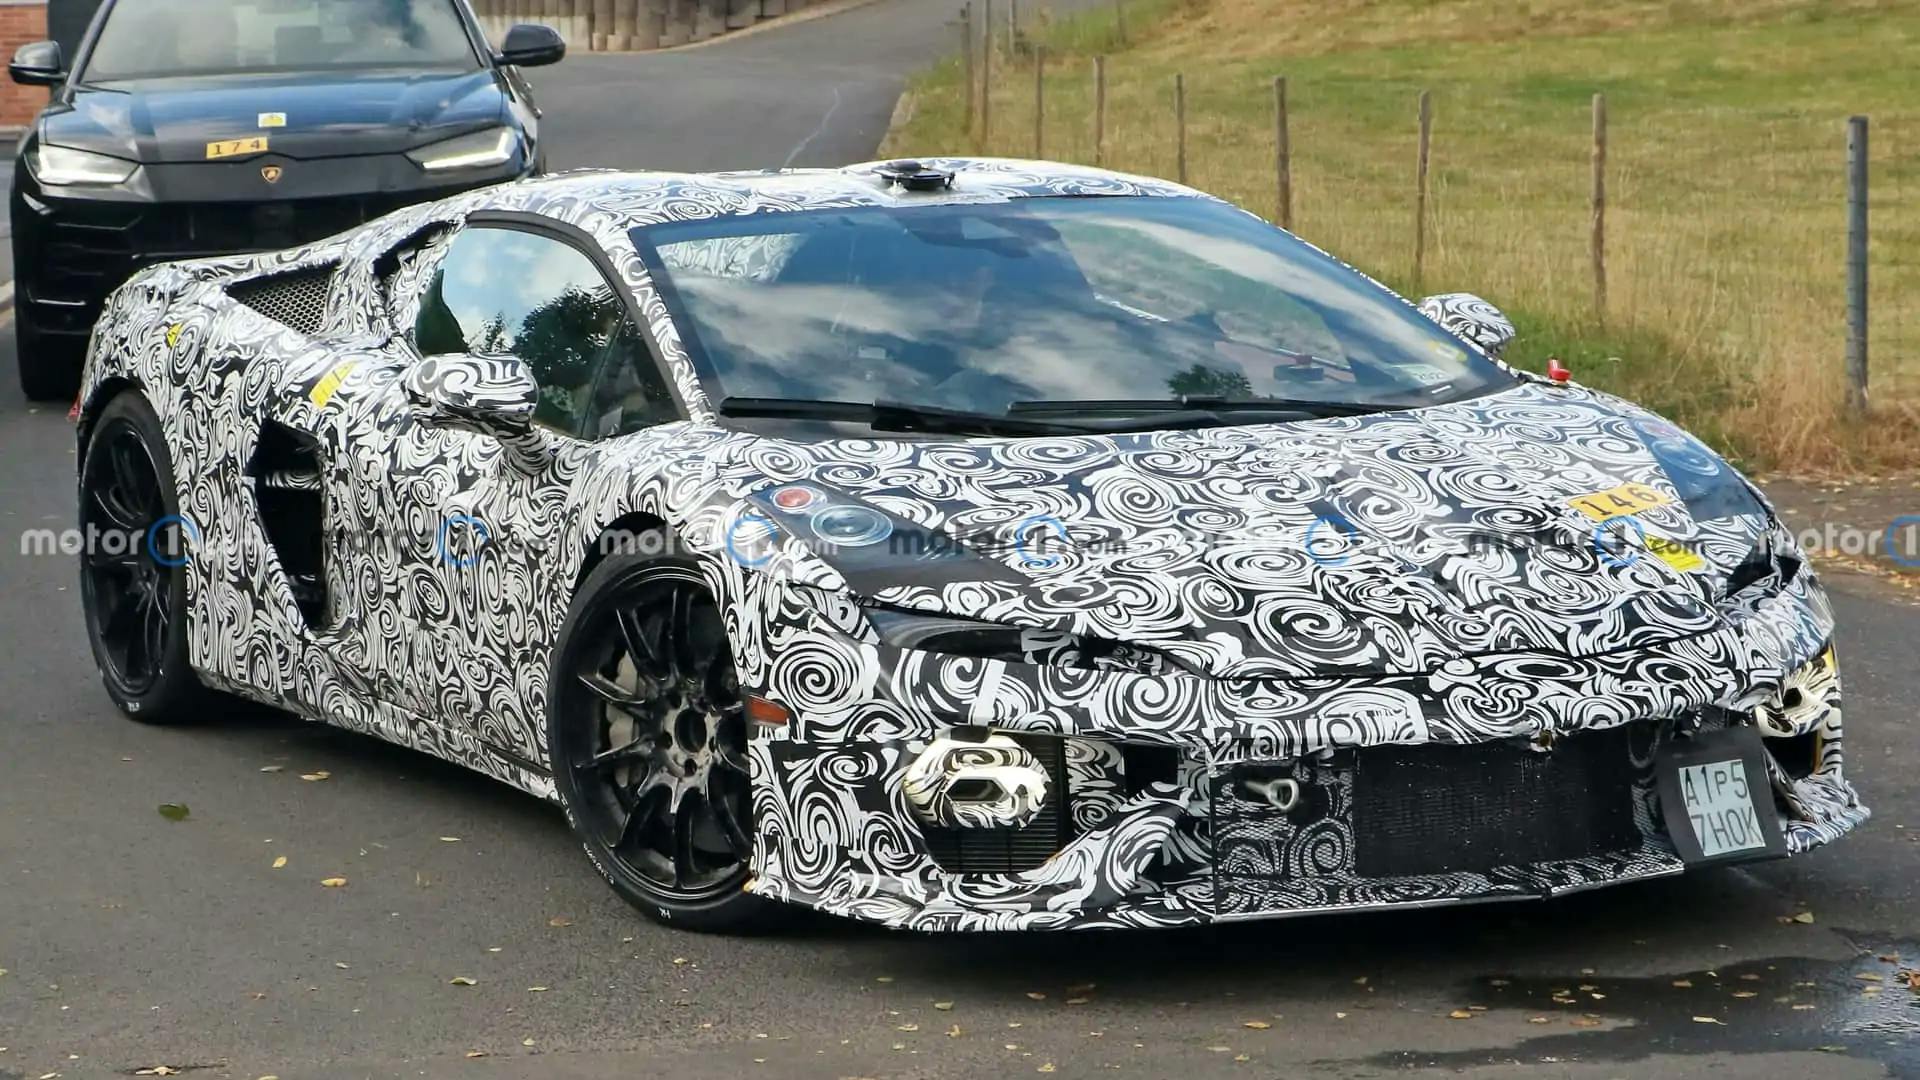 Succesorul lui Lamborghini Huracan din 2025 a fost surprins în premieră